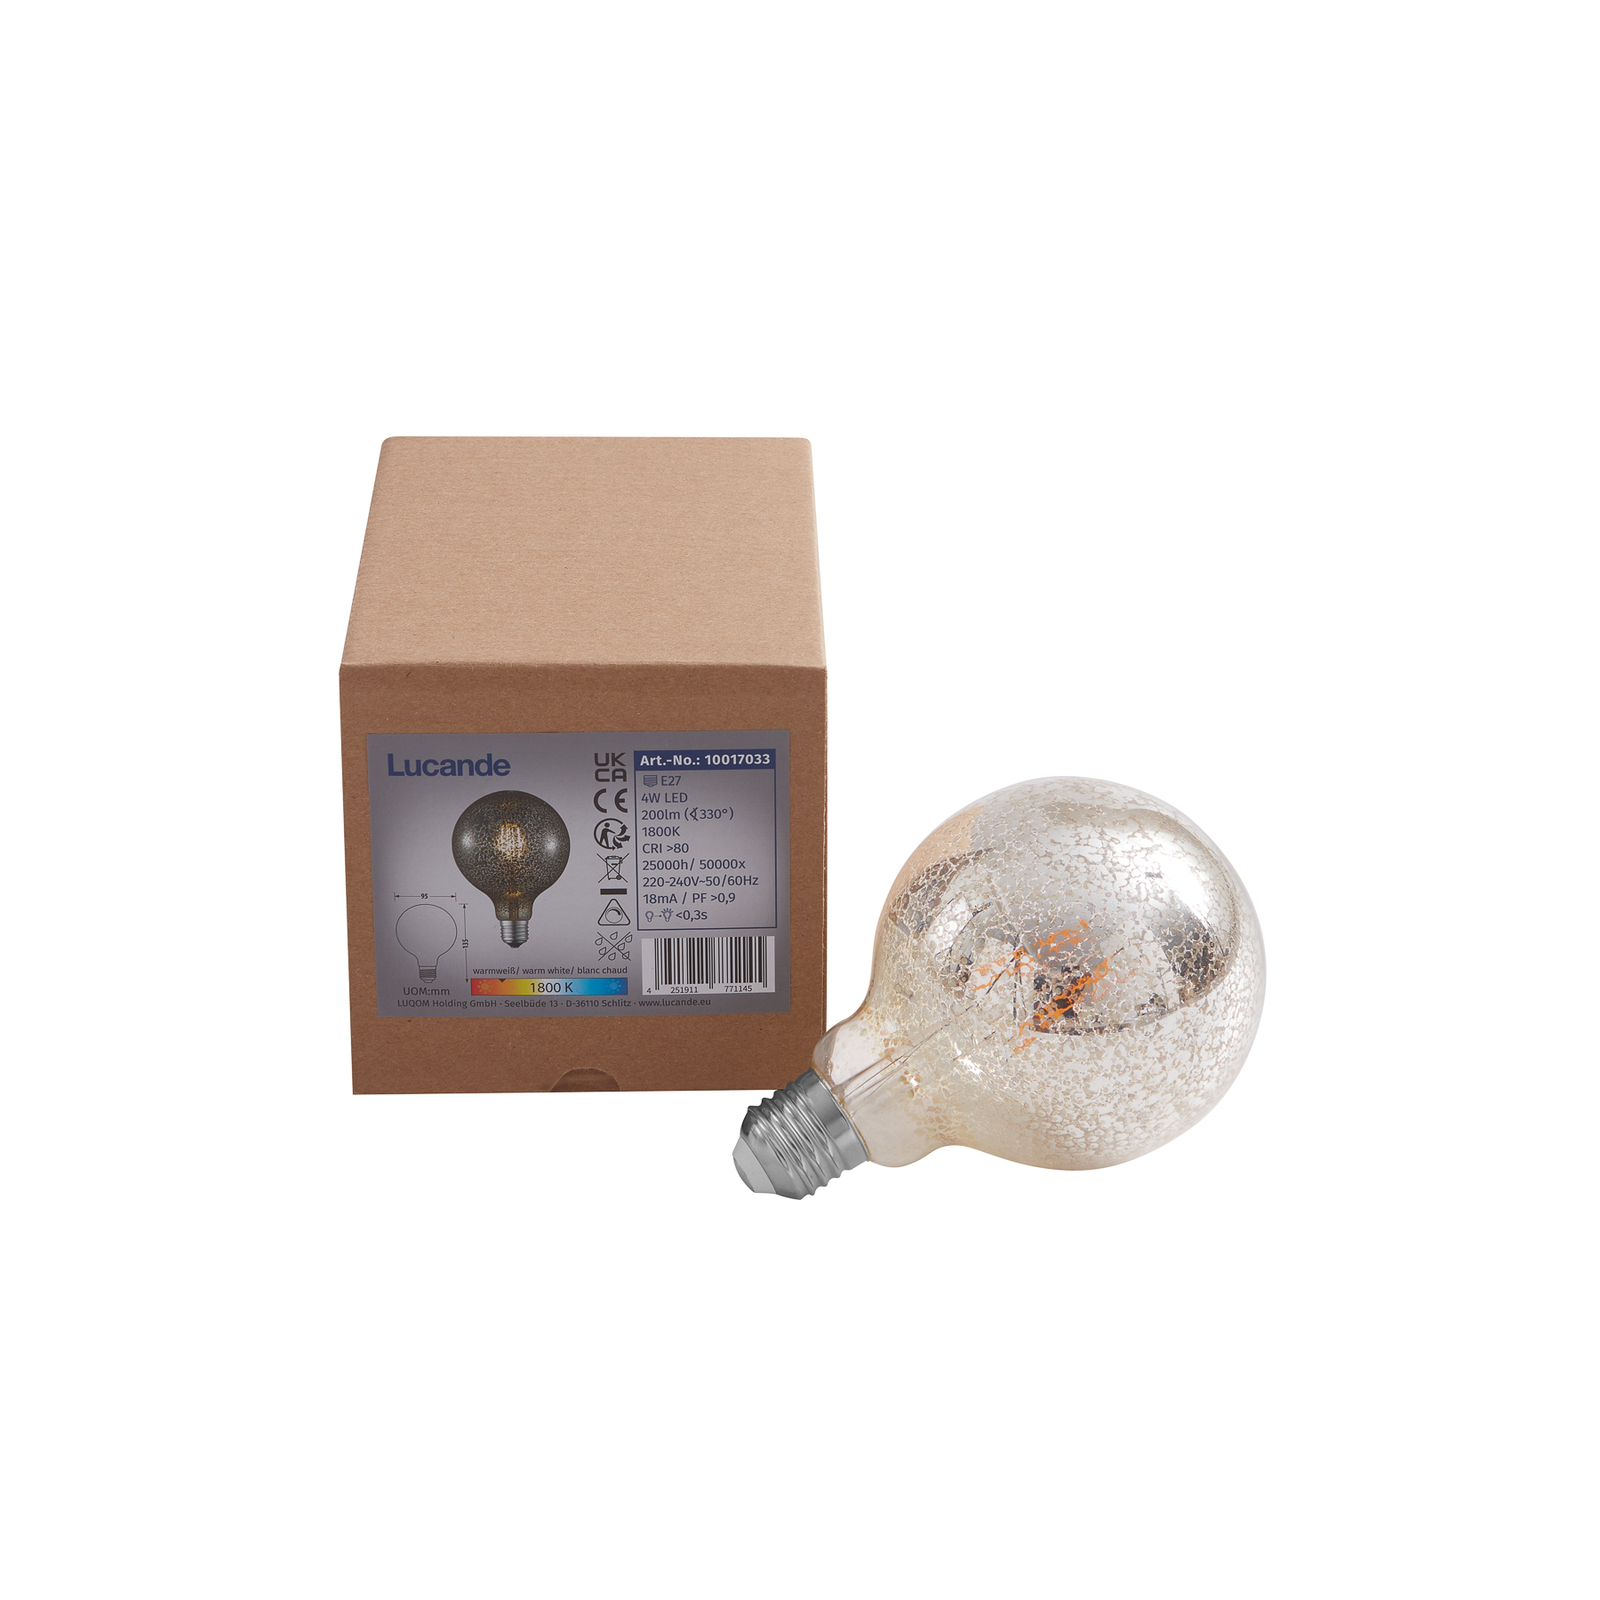 Lucande LED bulb E27 Ø 9.5 cm 4 W 1,800 K confetti